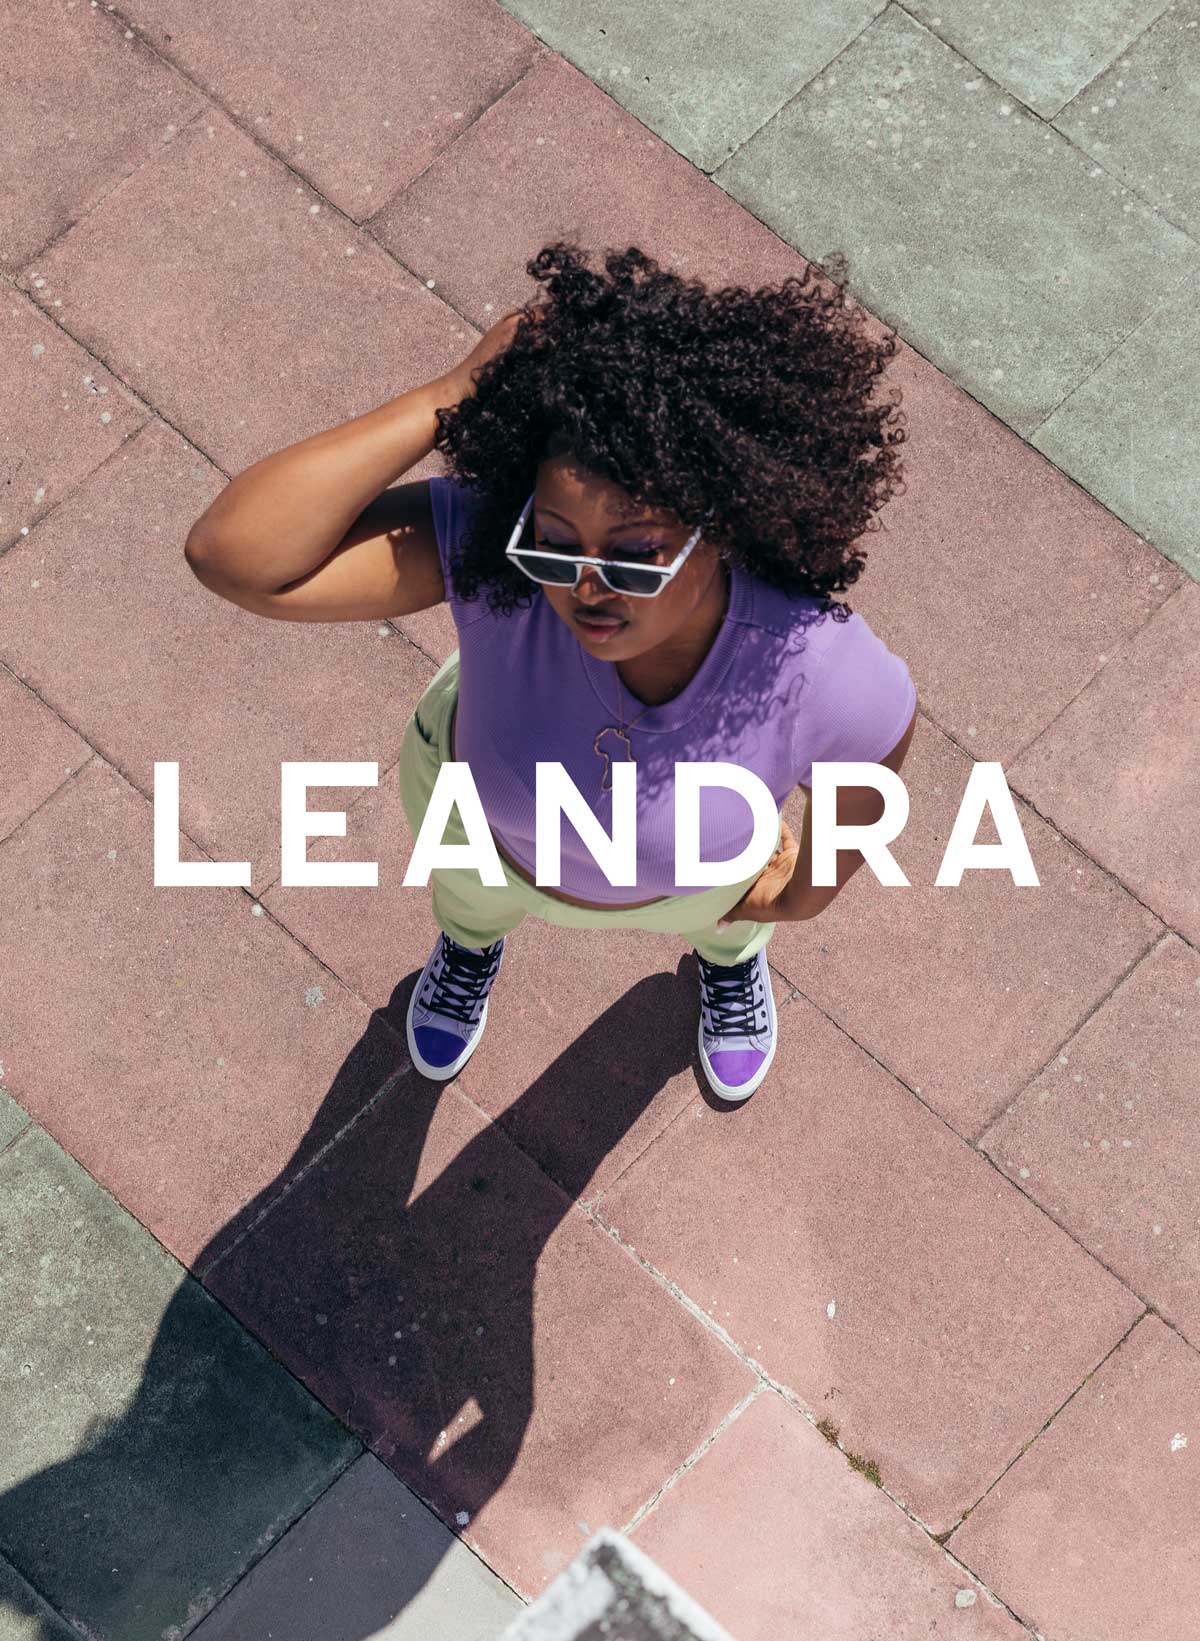 Leandra in lila Hemd und Sonnenbrille auf einem Bürgersteig stehend, Diverge sneakers, Förderung sozialer Auswirkungen und maßgefertigter Schuhe im Rahmen des IMAGINE-Projekts.